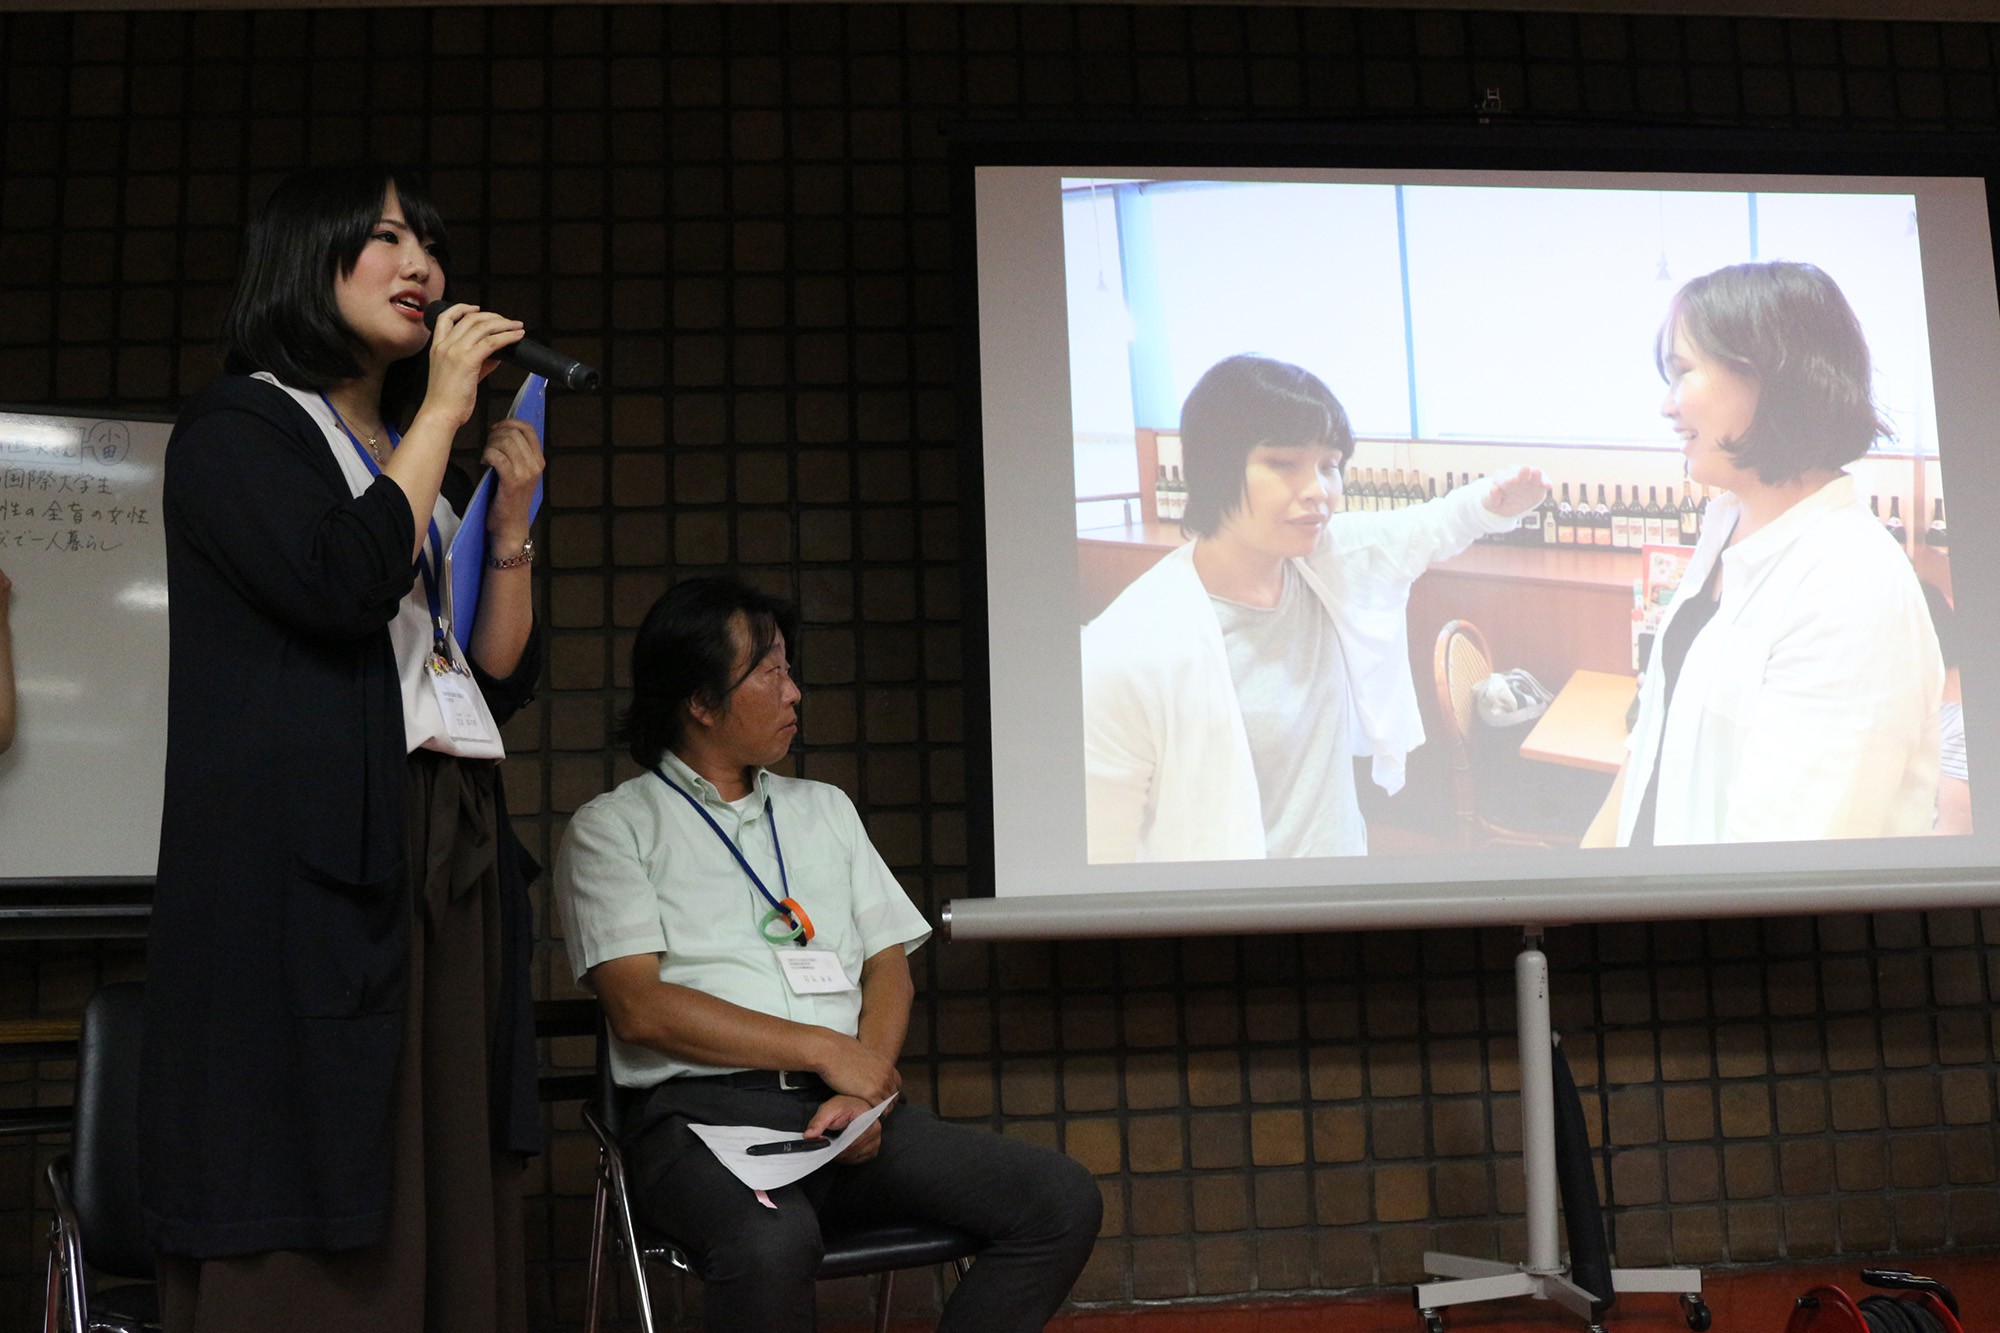 小田支部は視覚障害をもつ方による小学生向けの点字教室を紹介。発表は大北菜々恵さん。